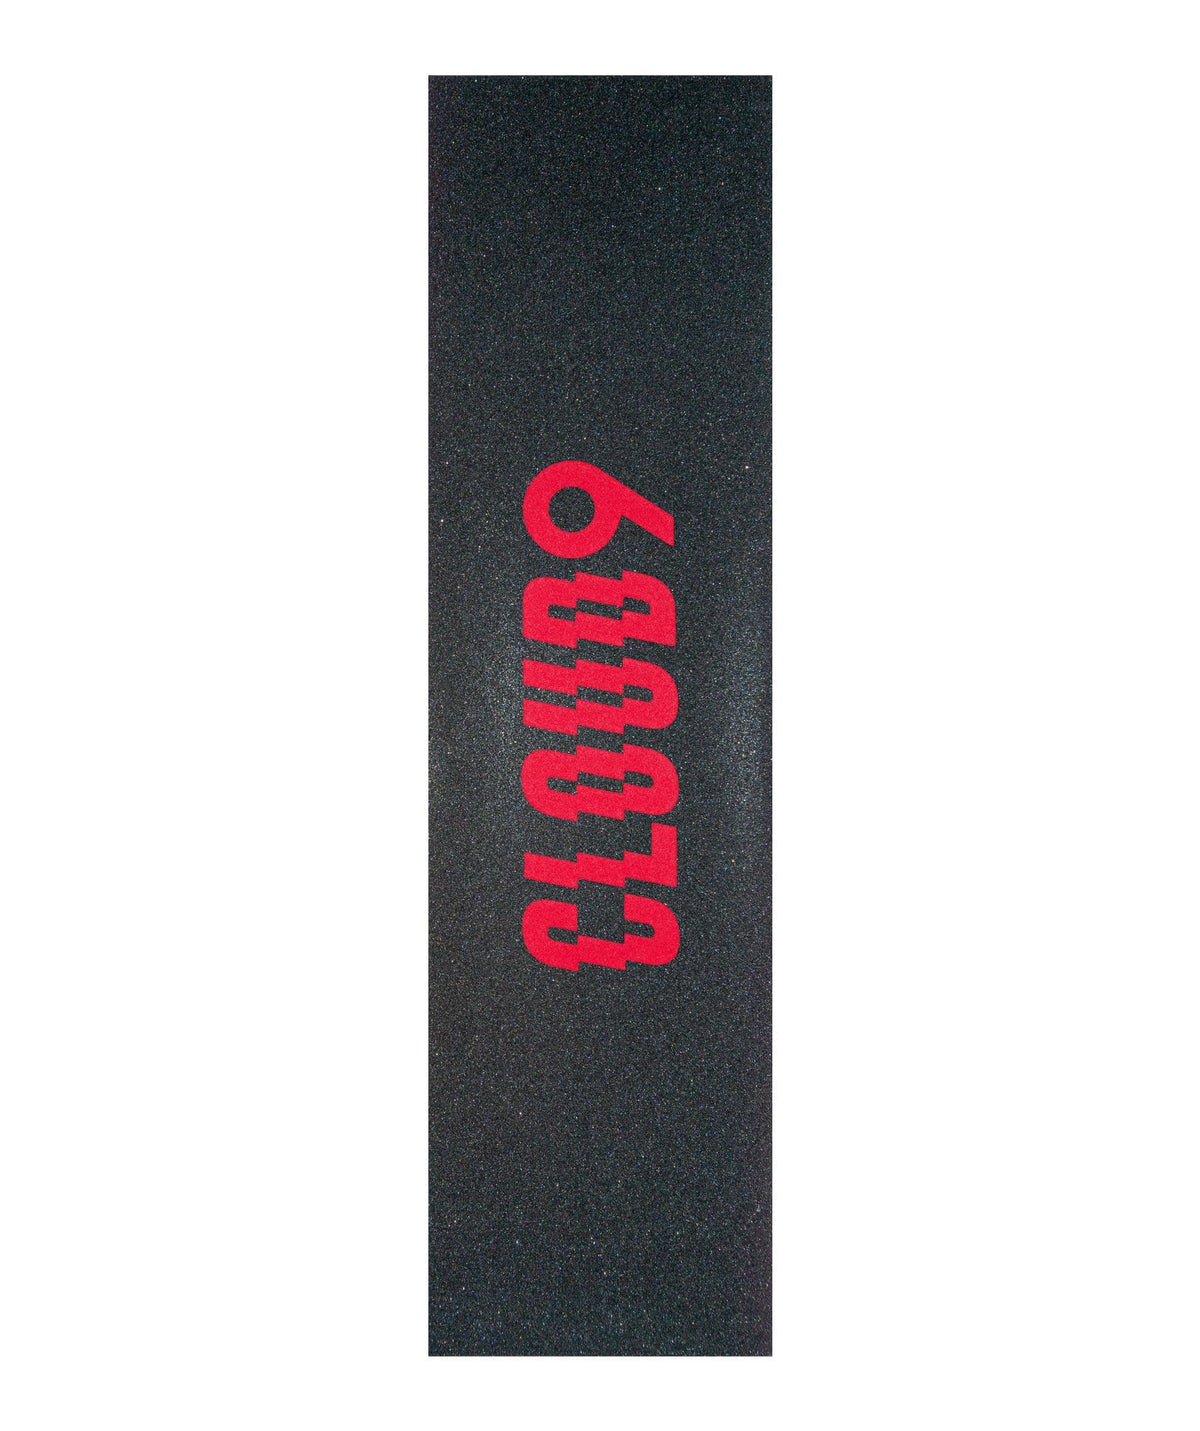 Red Cloud 9 Griptape Logo on Black Skateboard Griptape